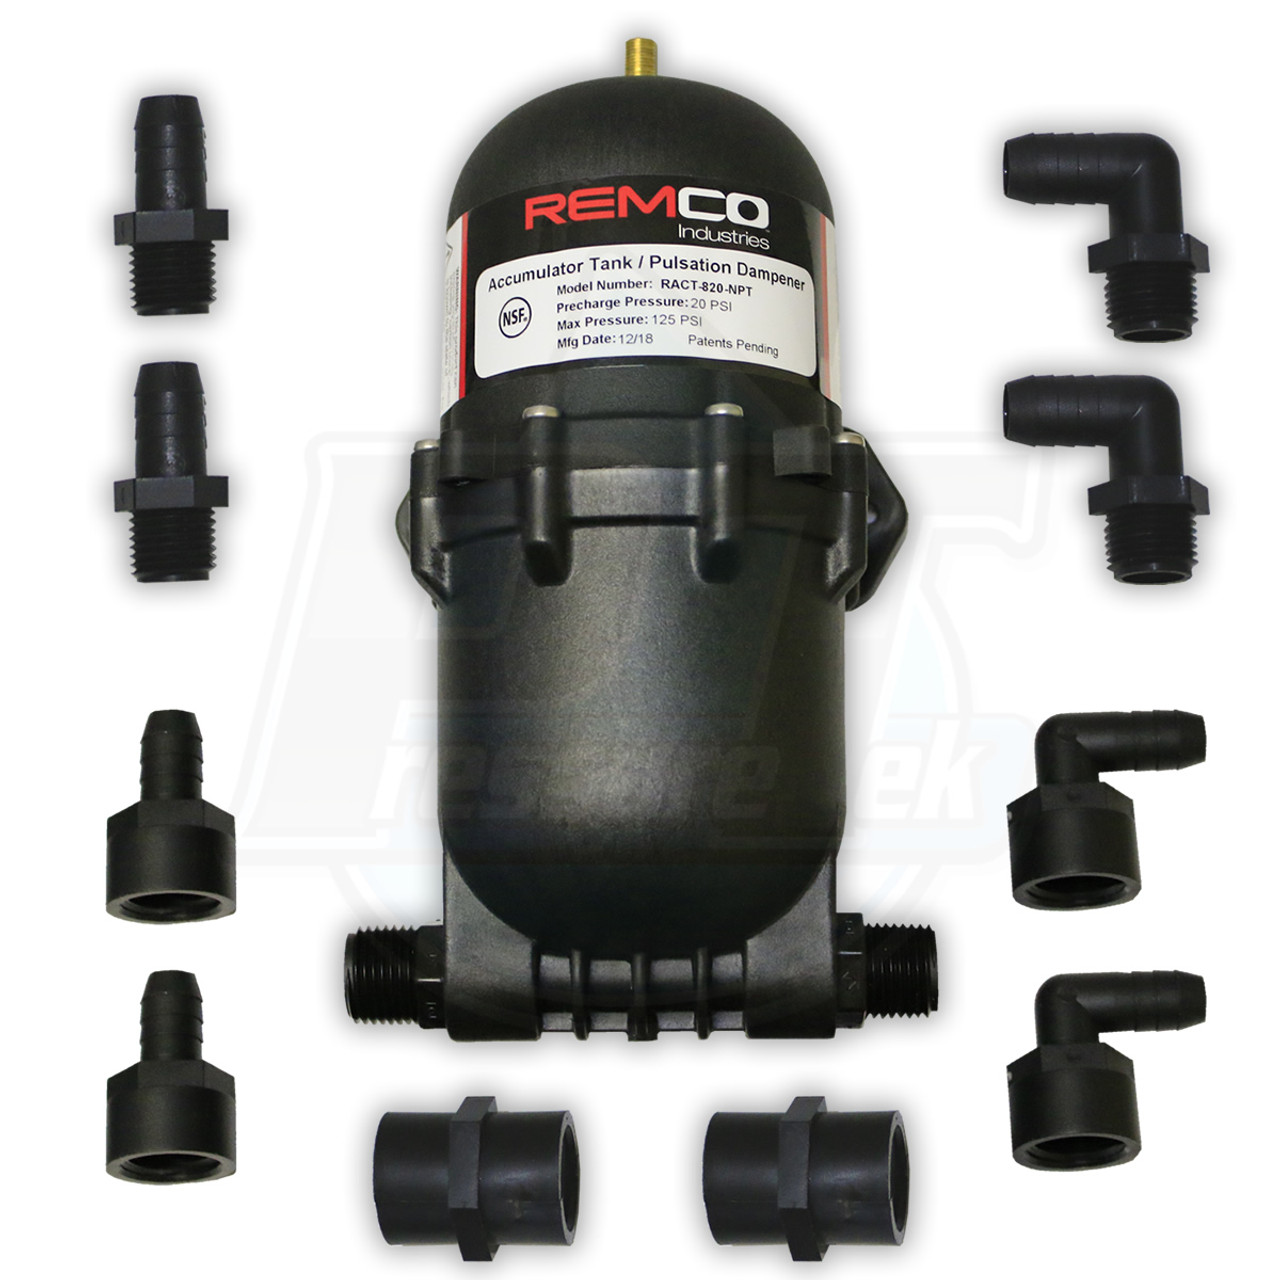 Pump Repair Kit: Comprehensive Solution for Pump Repairs